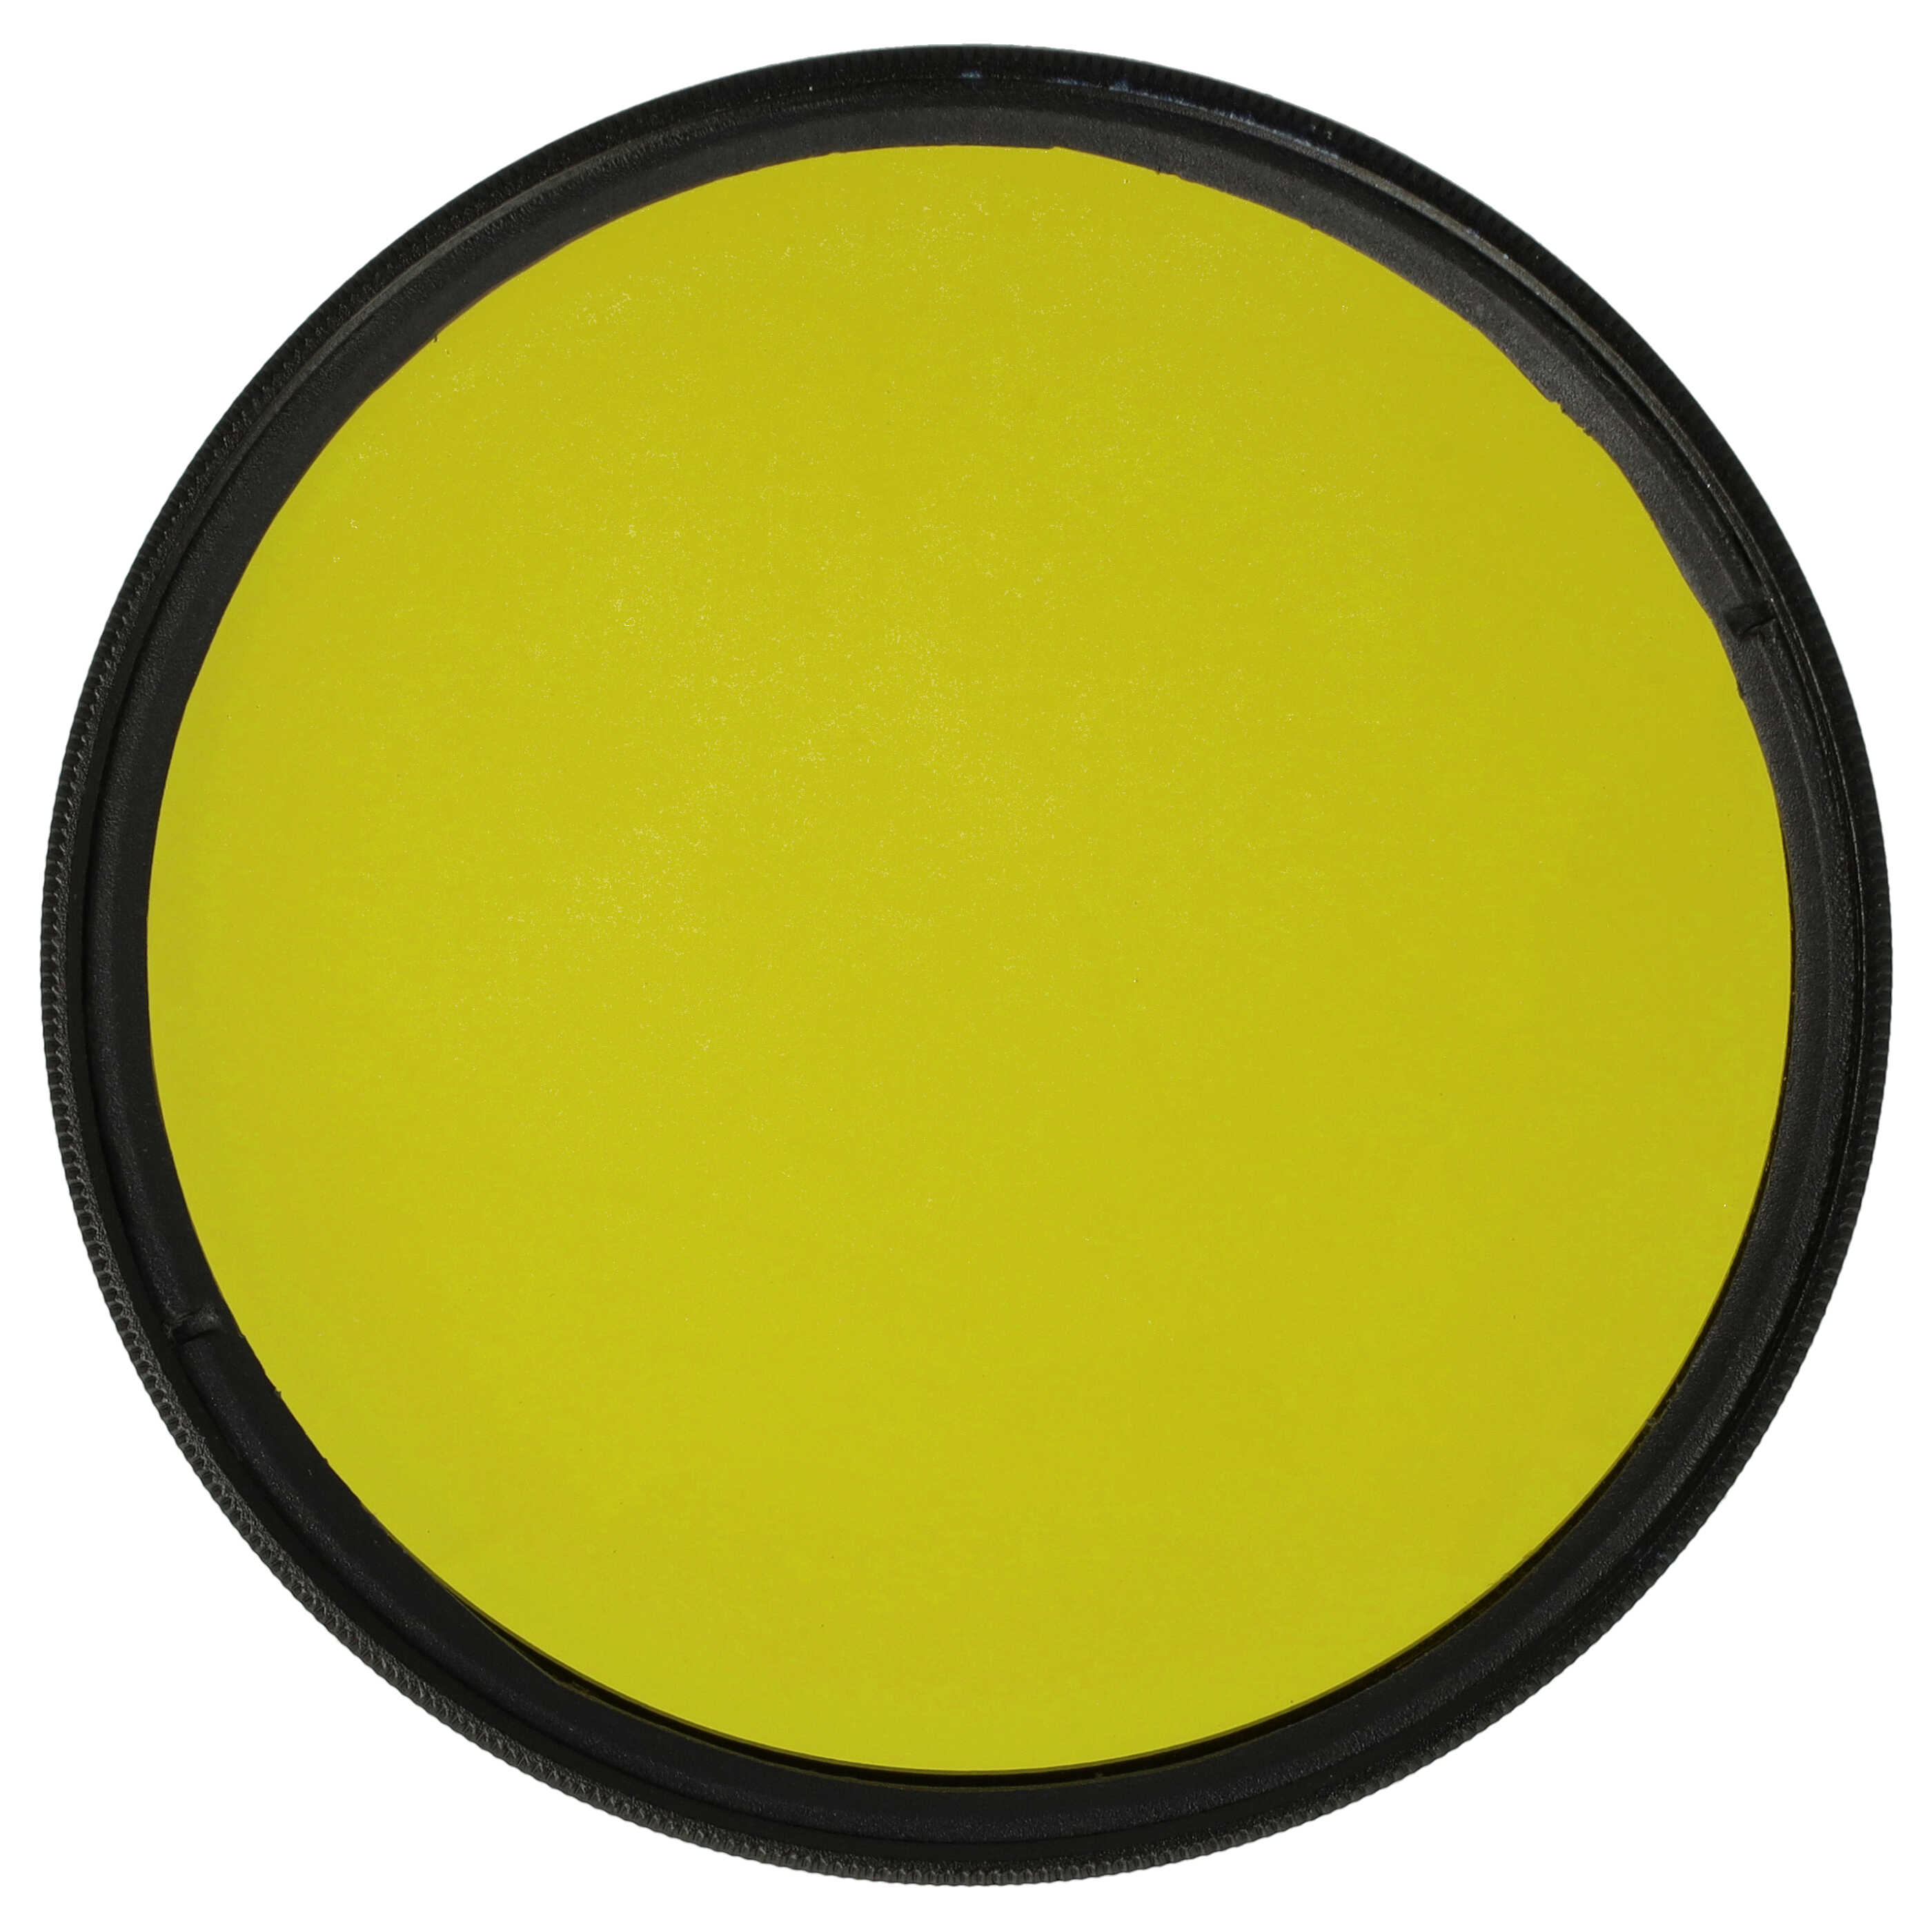 Filtre de couleur jaune pour objectifs d'appareils photo de 67 mm - Filtre jaune